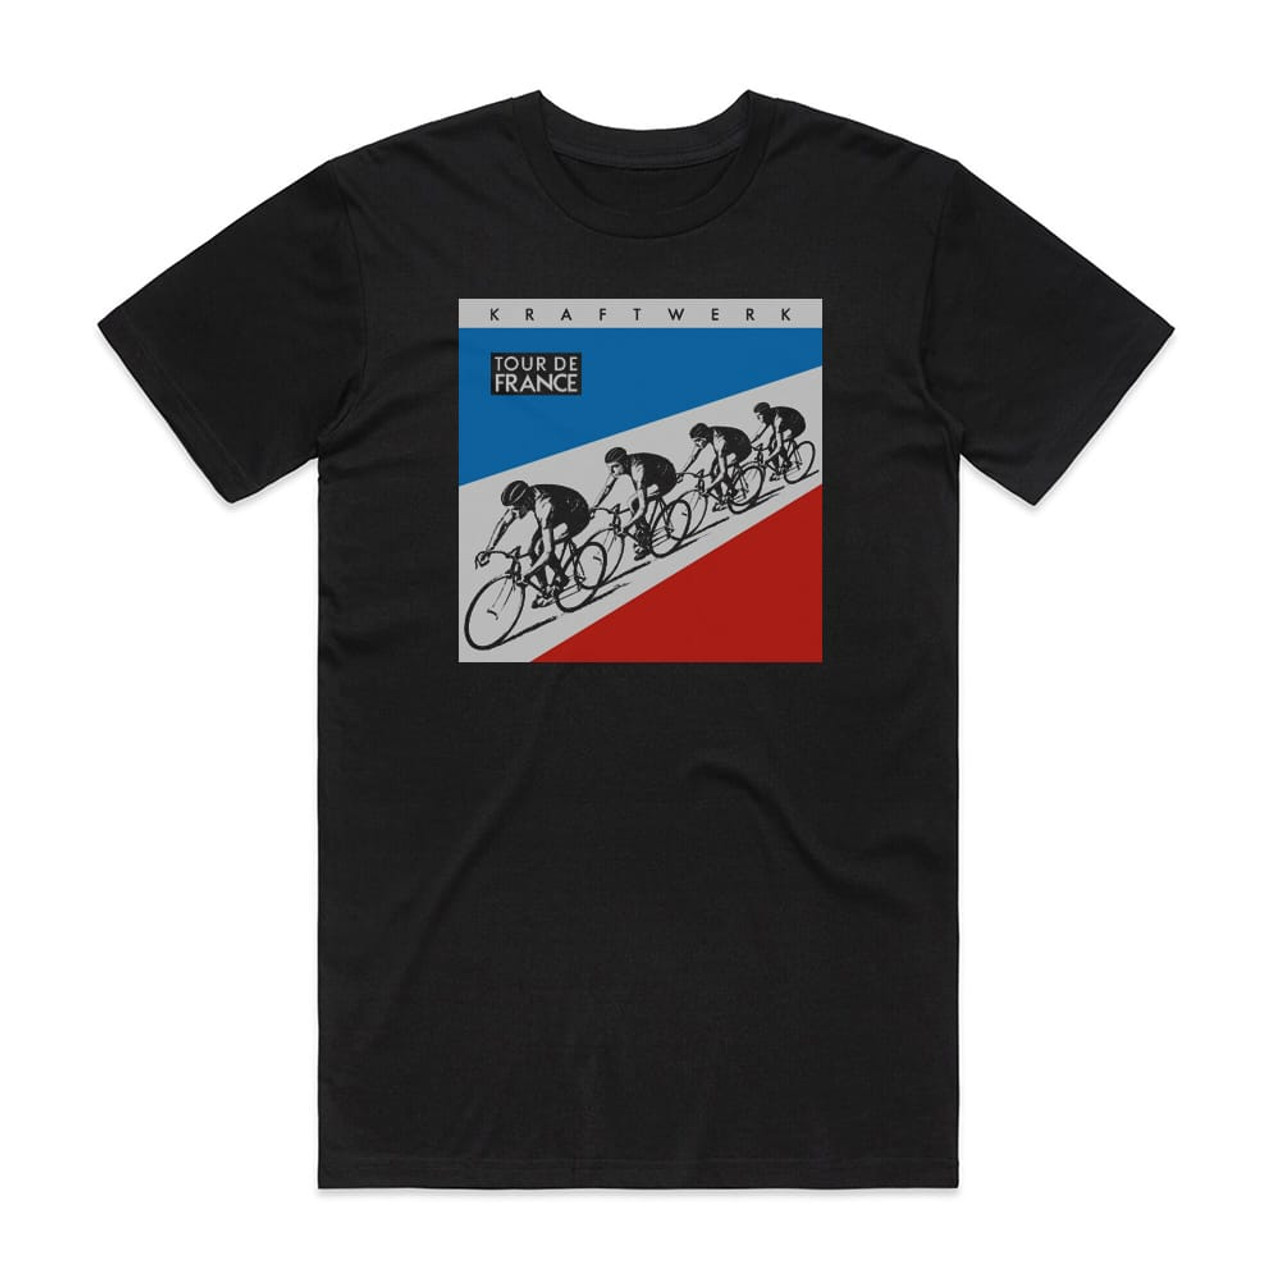 controller Kræft voldtage Kraftwerk Tour De France 2 Album Cover T-Shirt Black